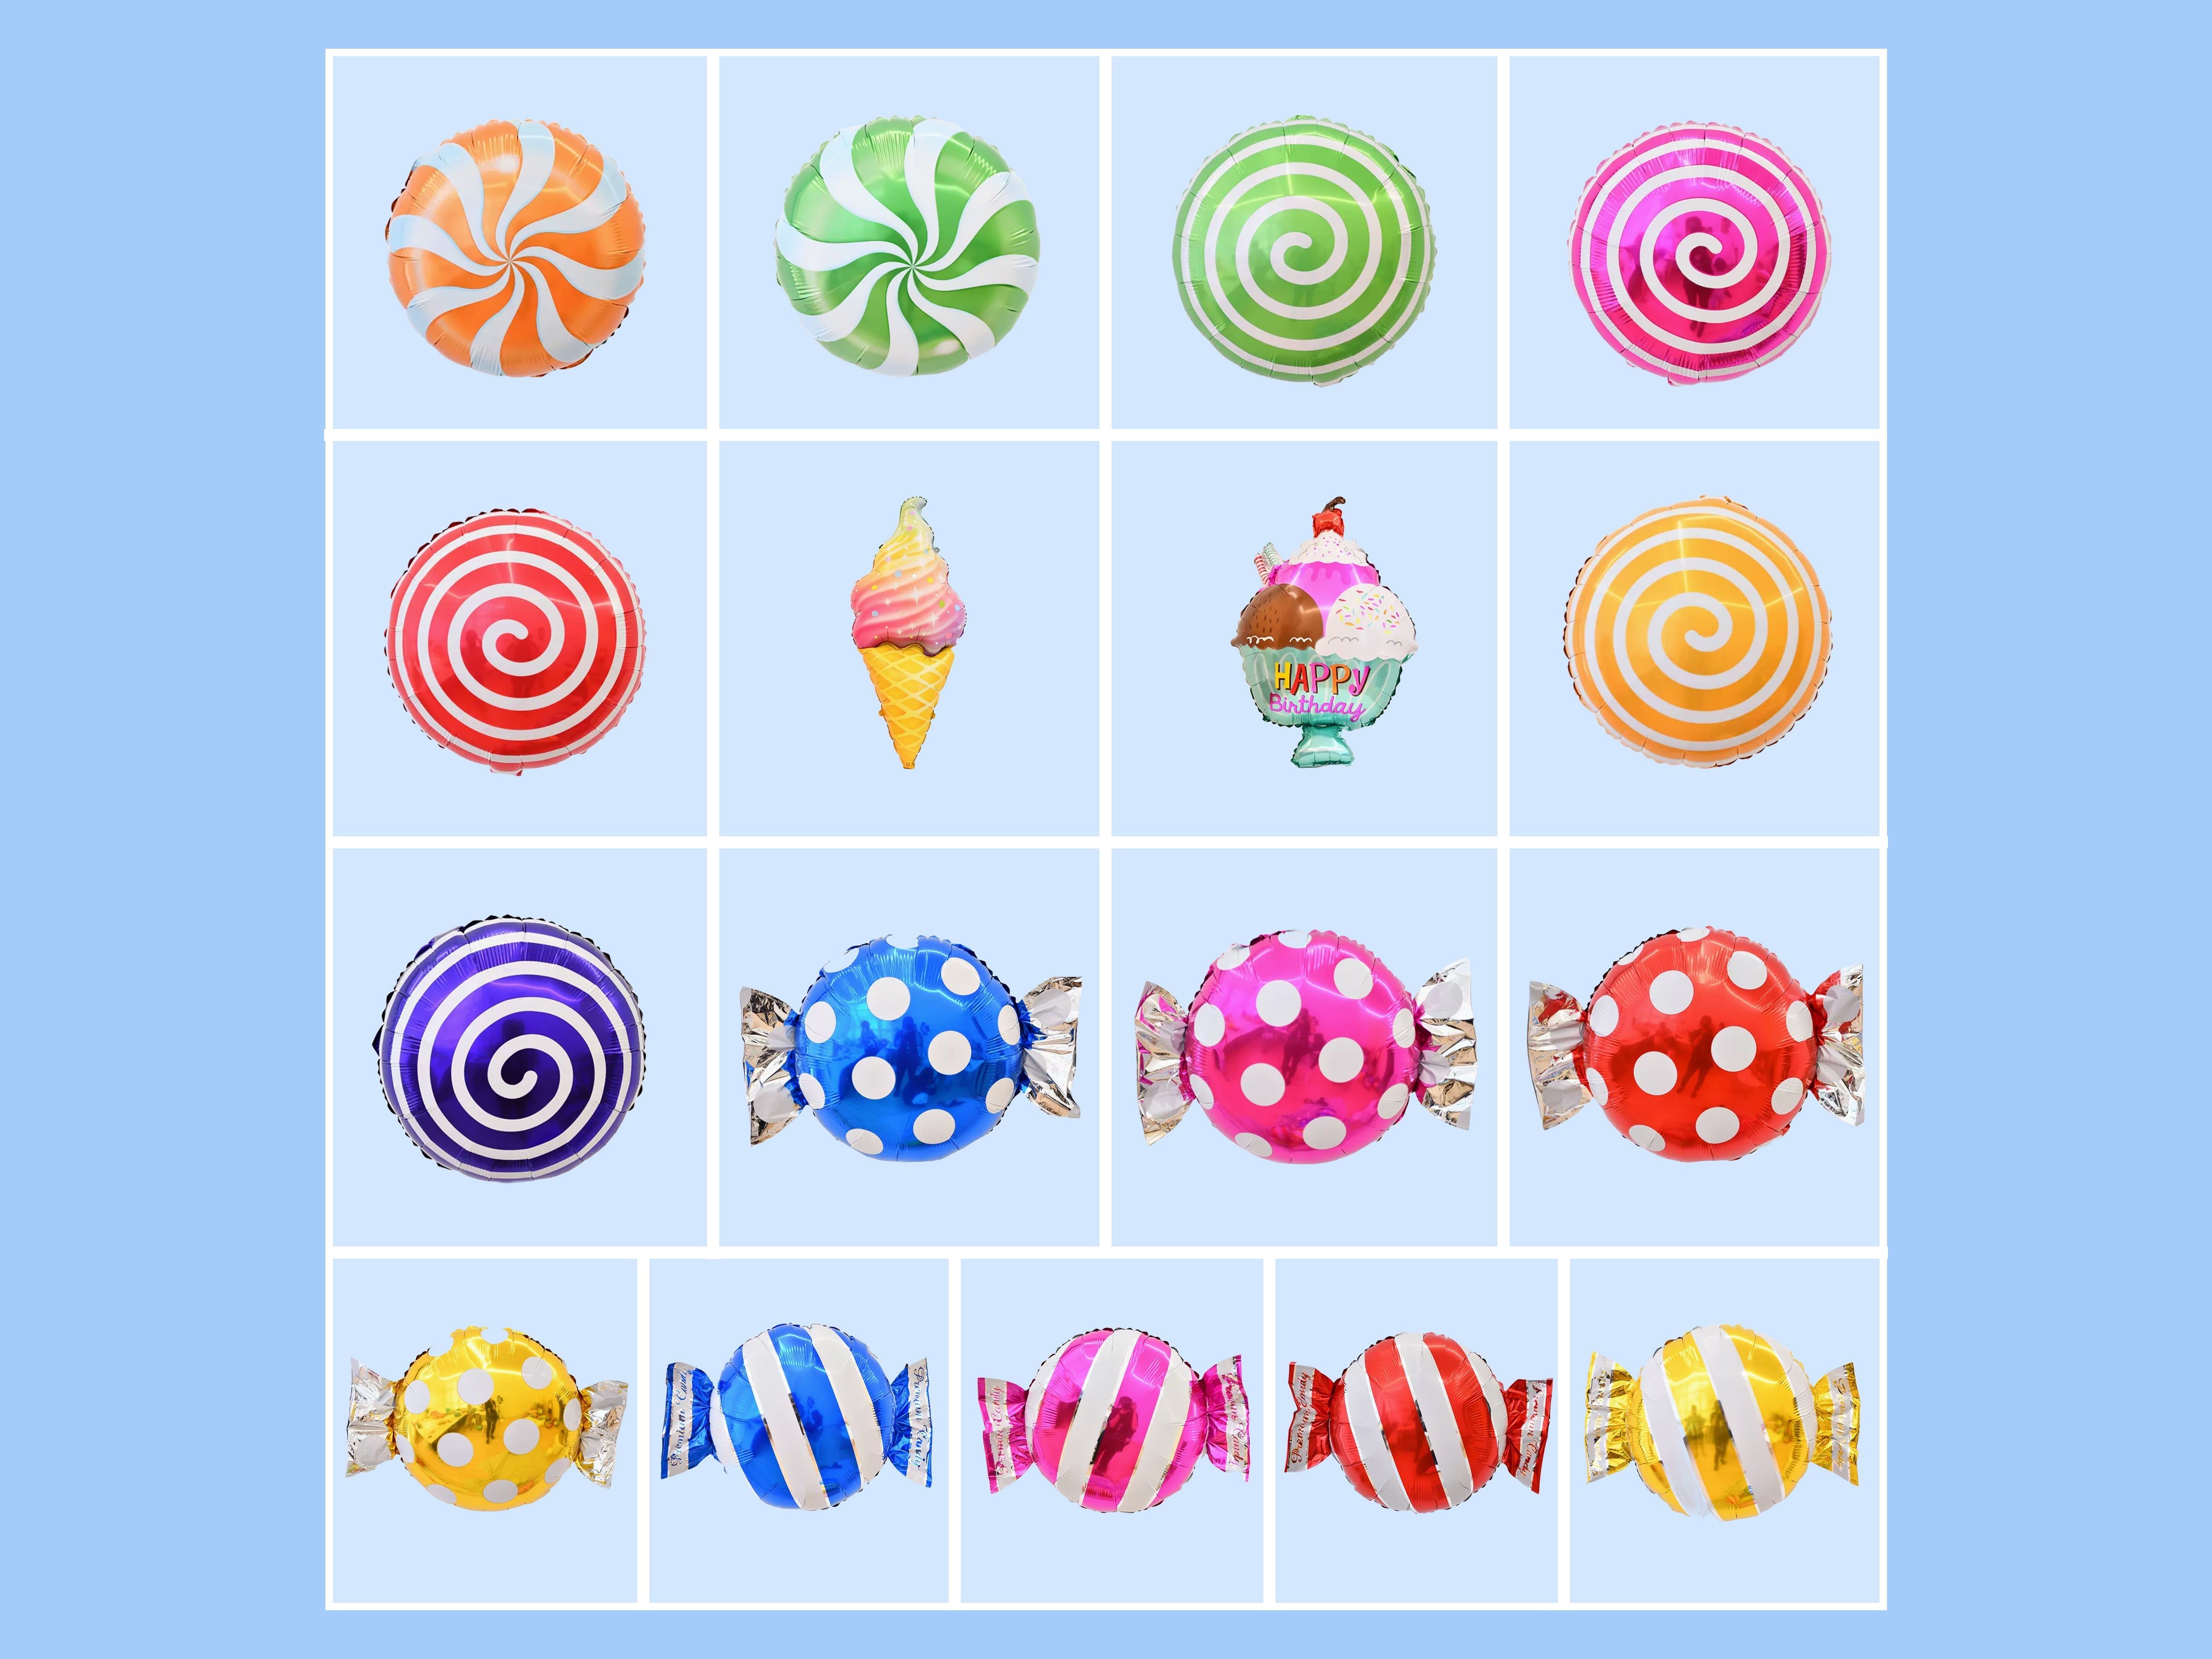 Kate Süßigkeiten Eiscreme aufblasbare Requisiten Set 17pcs